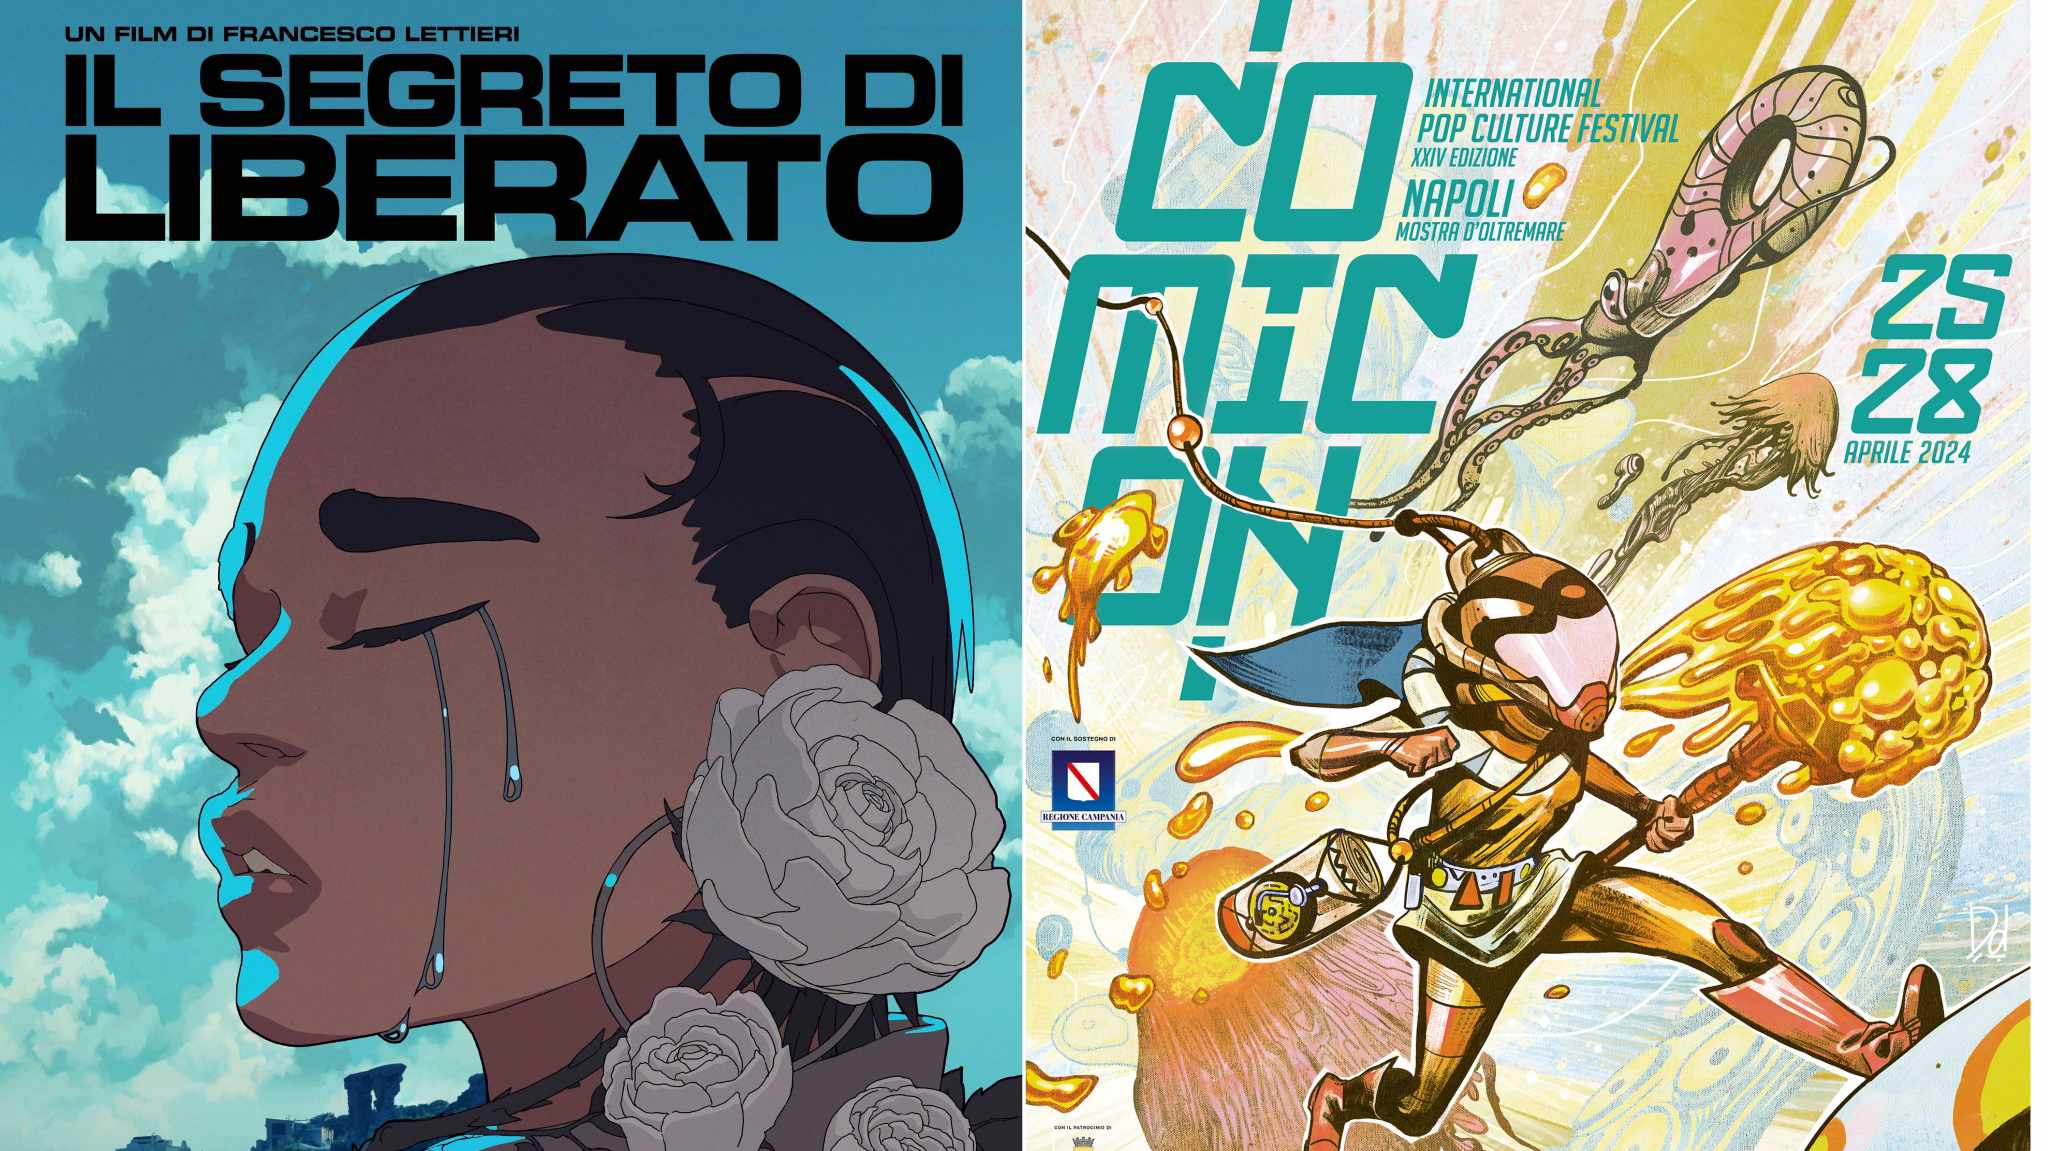 Comicon Napoli 2024: Il segreto di Liberato di Francesco Lettieri evento esclusivo